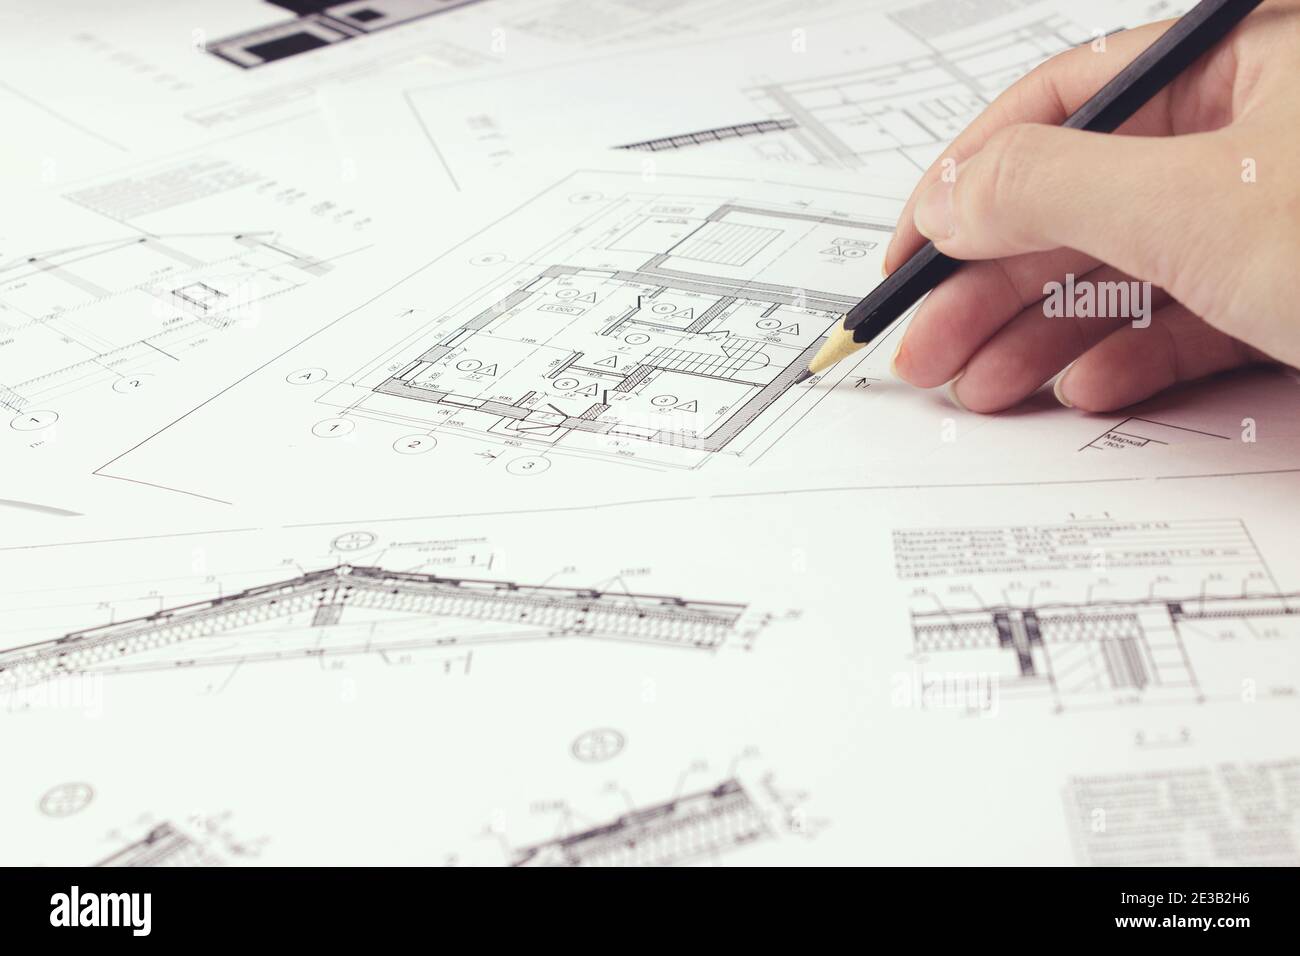 Ein Architekt Ingenieur erstellt eine Arbeitszeichnung Skizze für den Bau eines Hauses Gebäude. Architekturdesign Projekte Konzept. Ingenieurwesen und Architekt Stockfoto